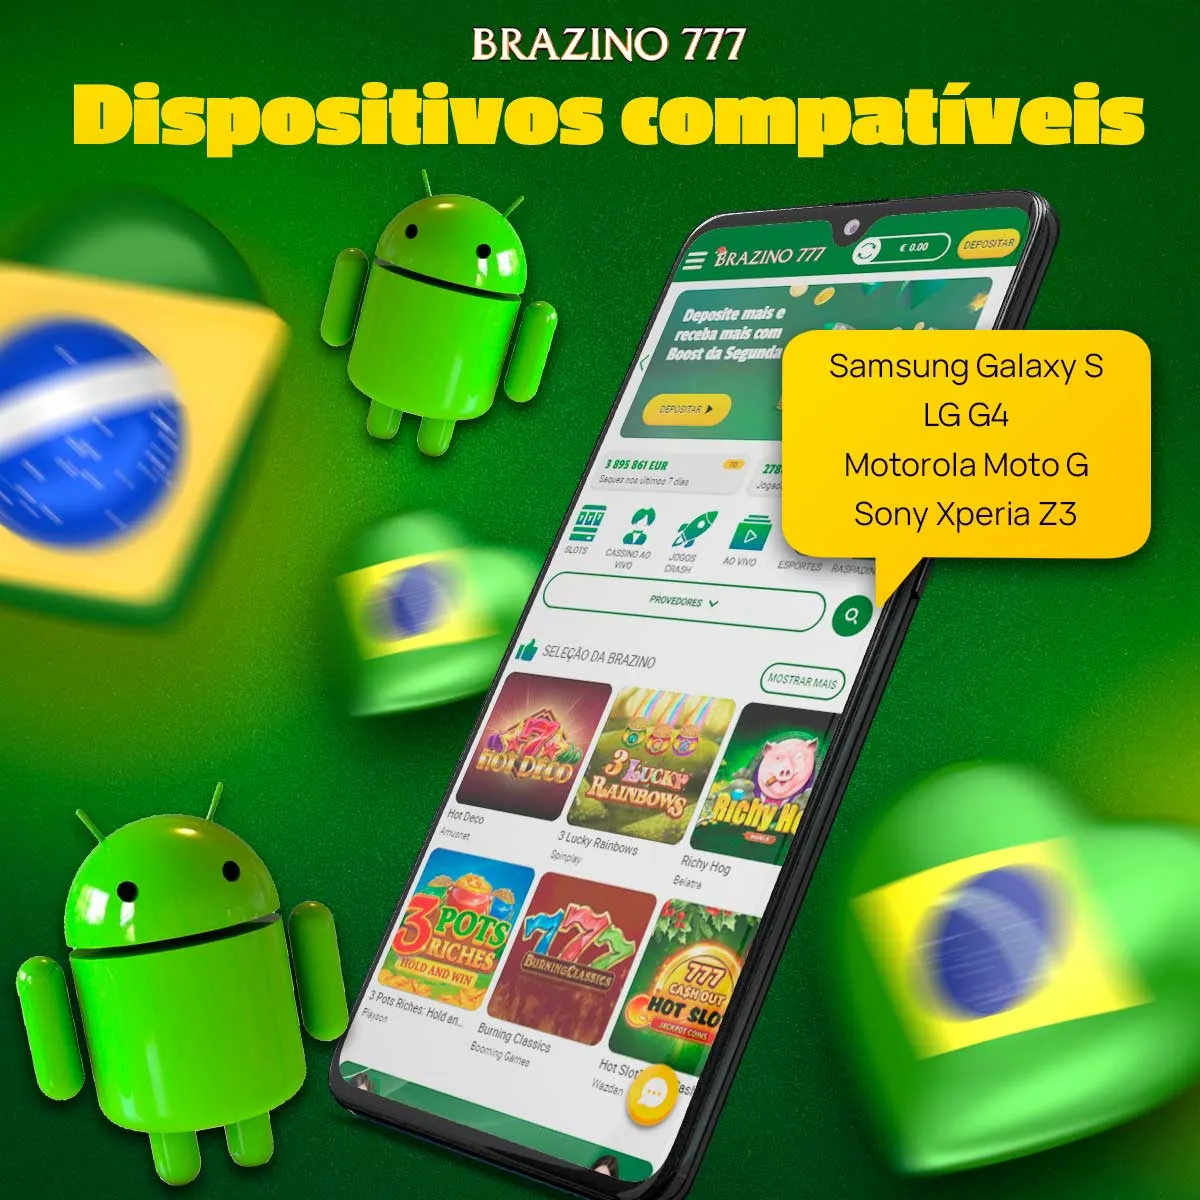 Compatibilidade do aplicativo Brazino777 com dispositivos Android